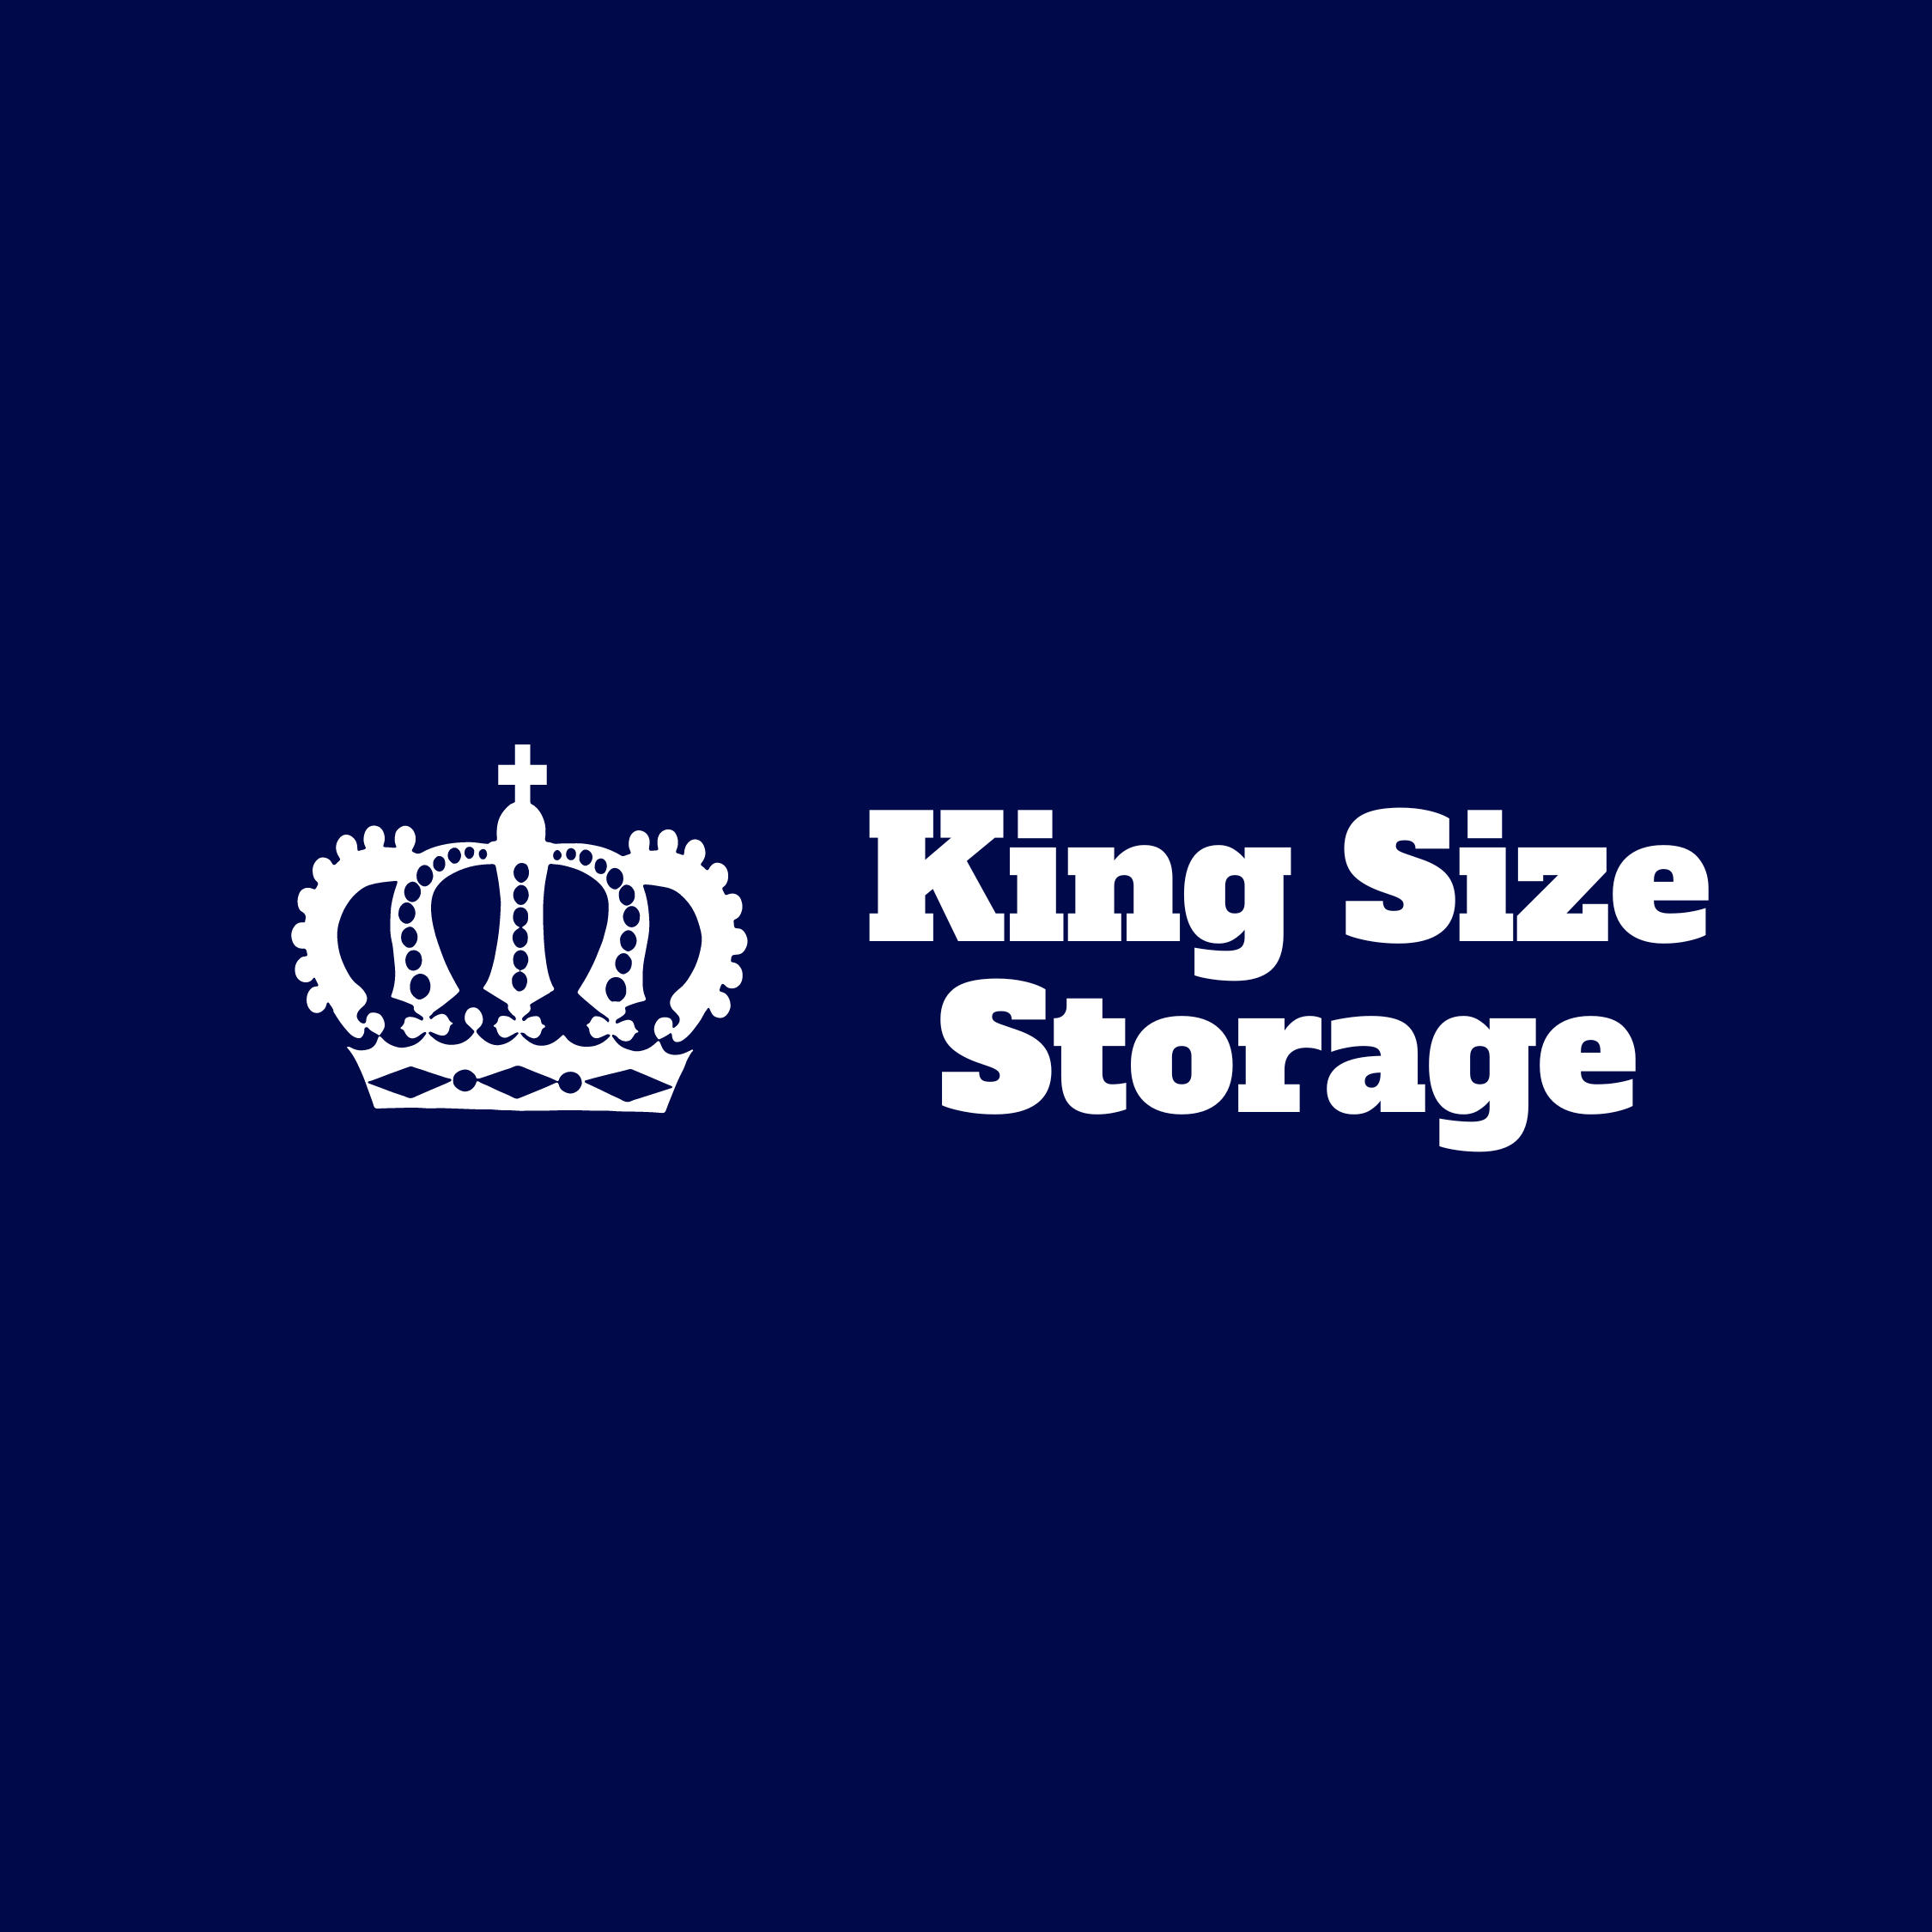 King Size Storage